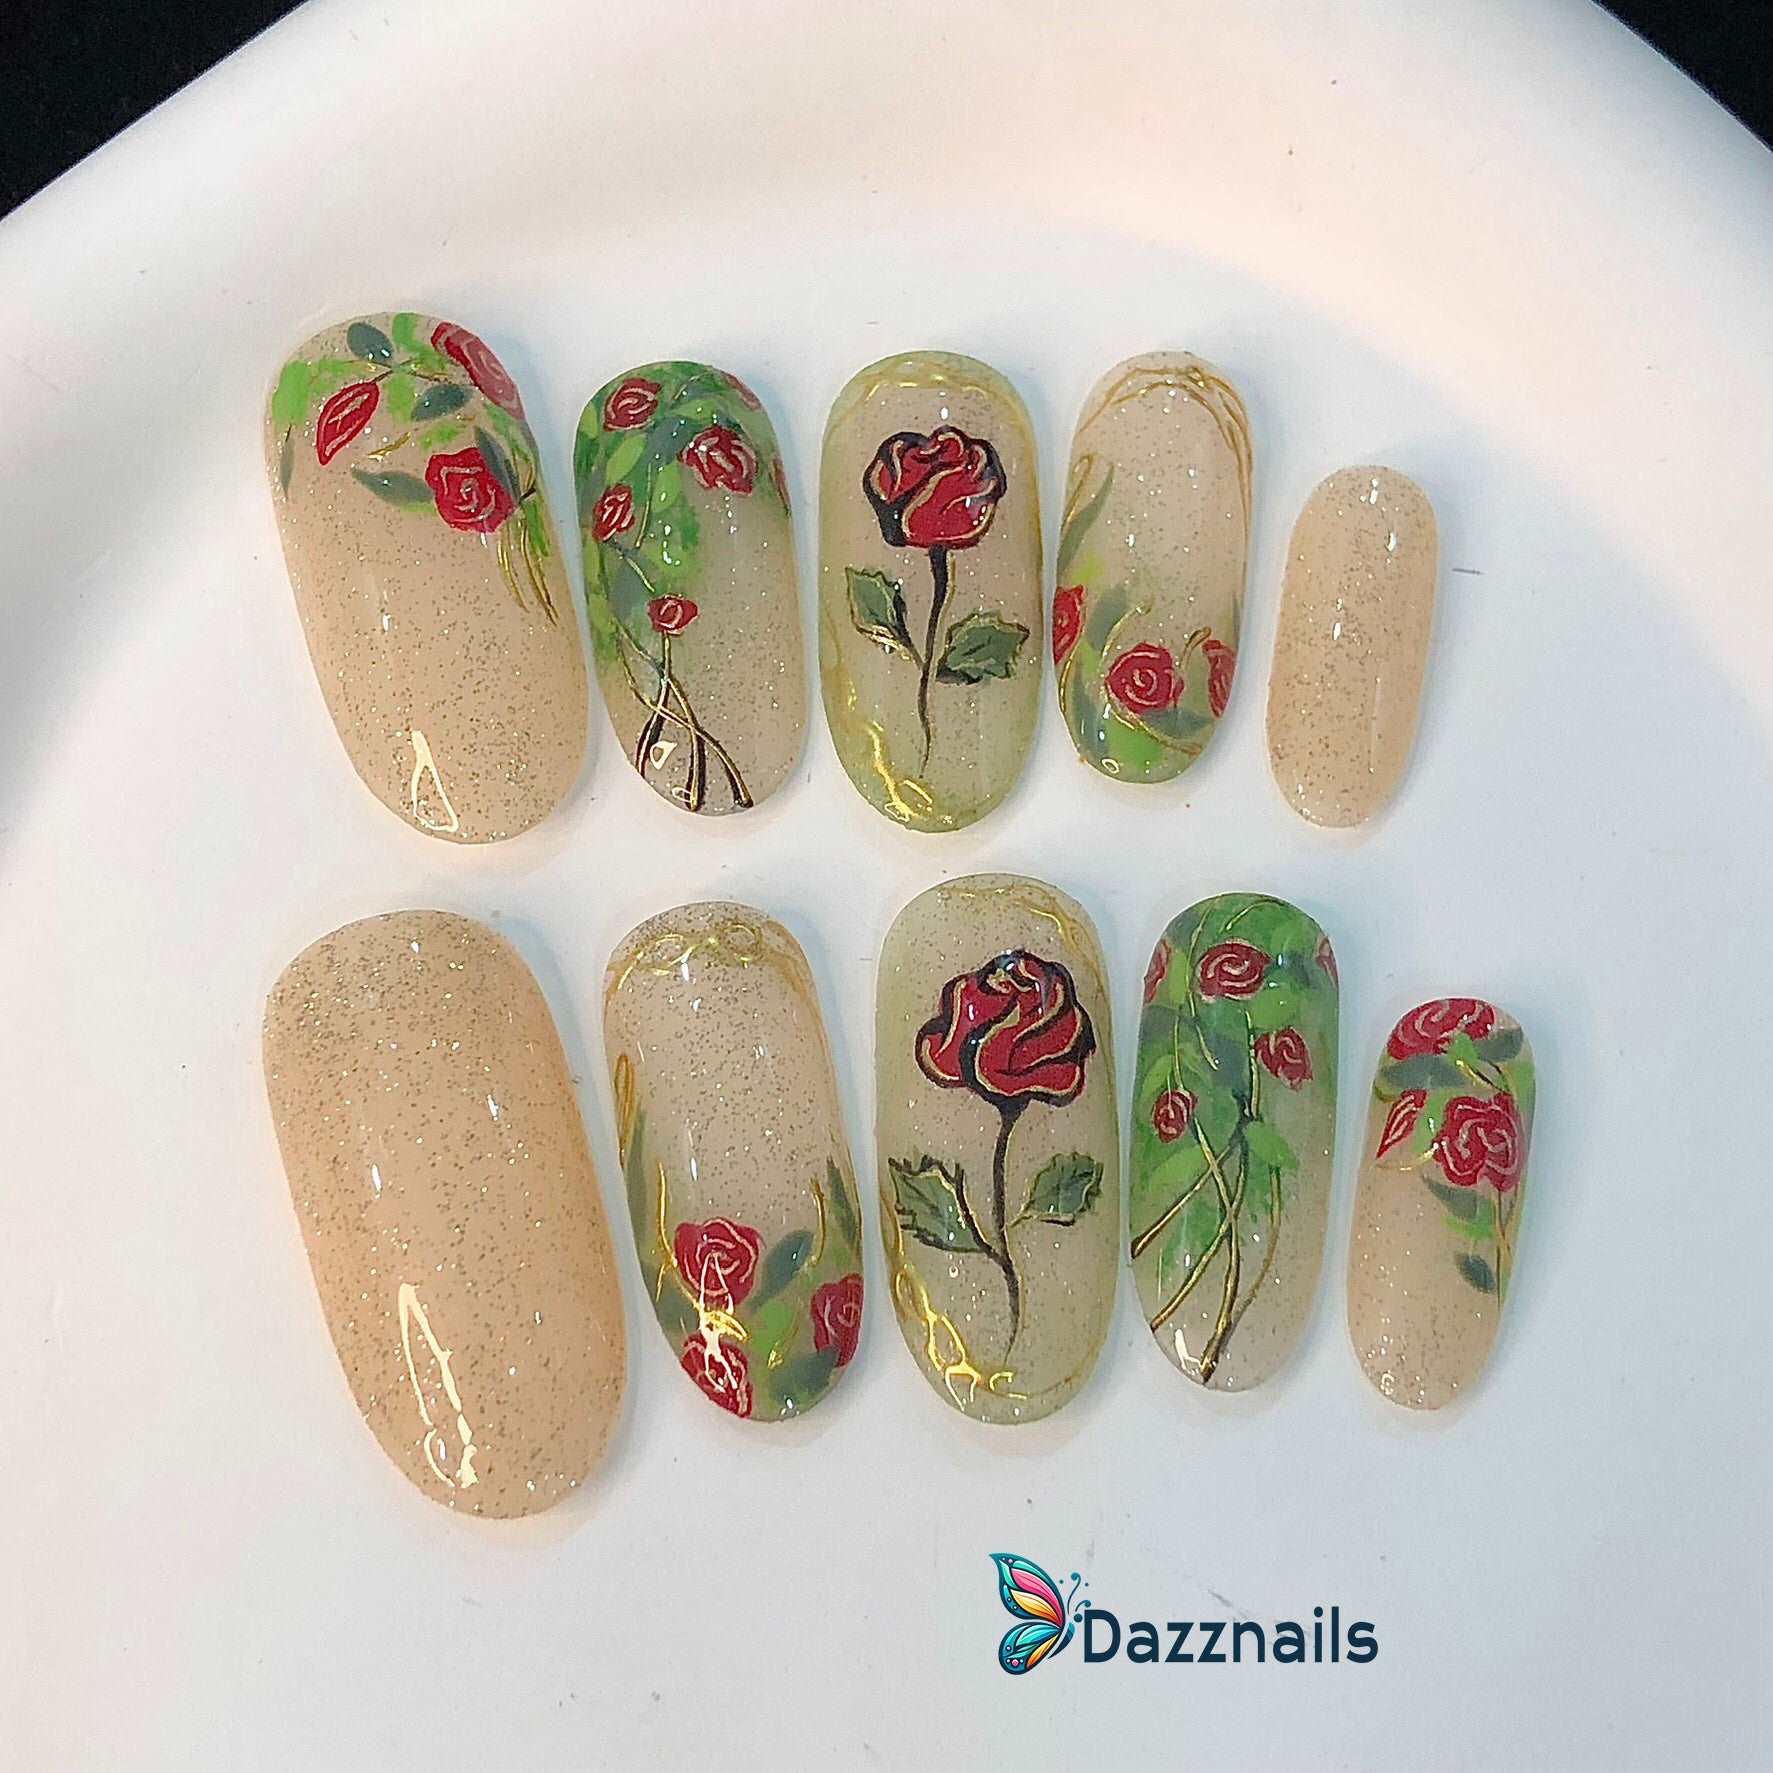 Handmade Spring Press on Nails - Golden Red Leaf Flower Rose Design.